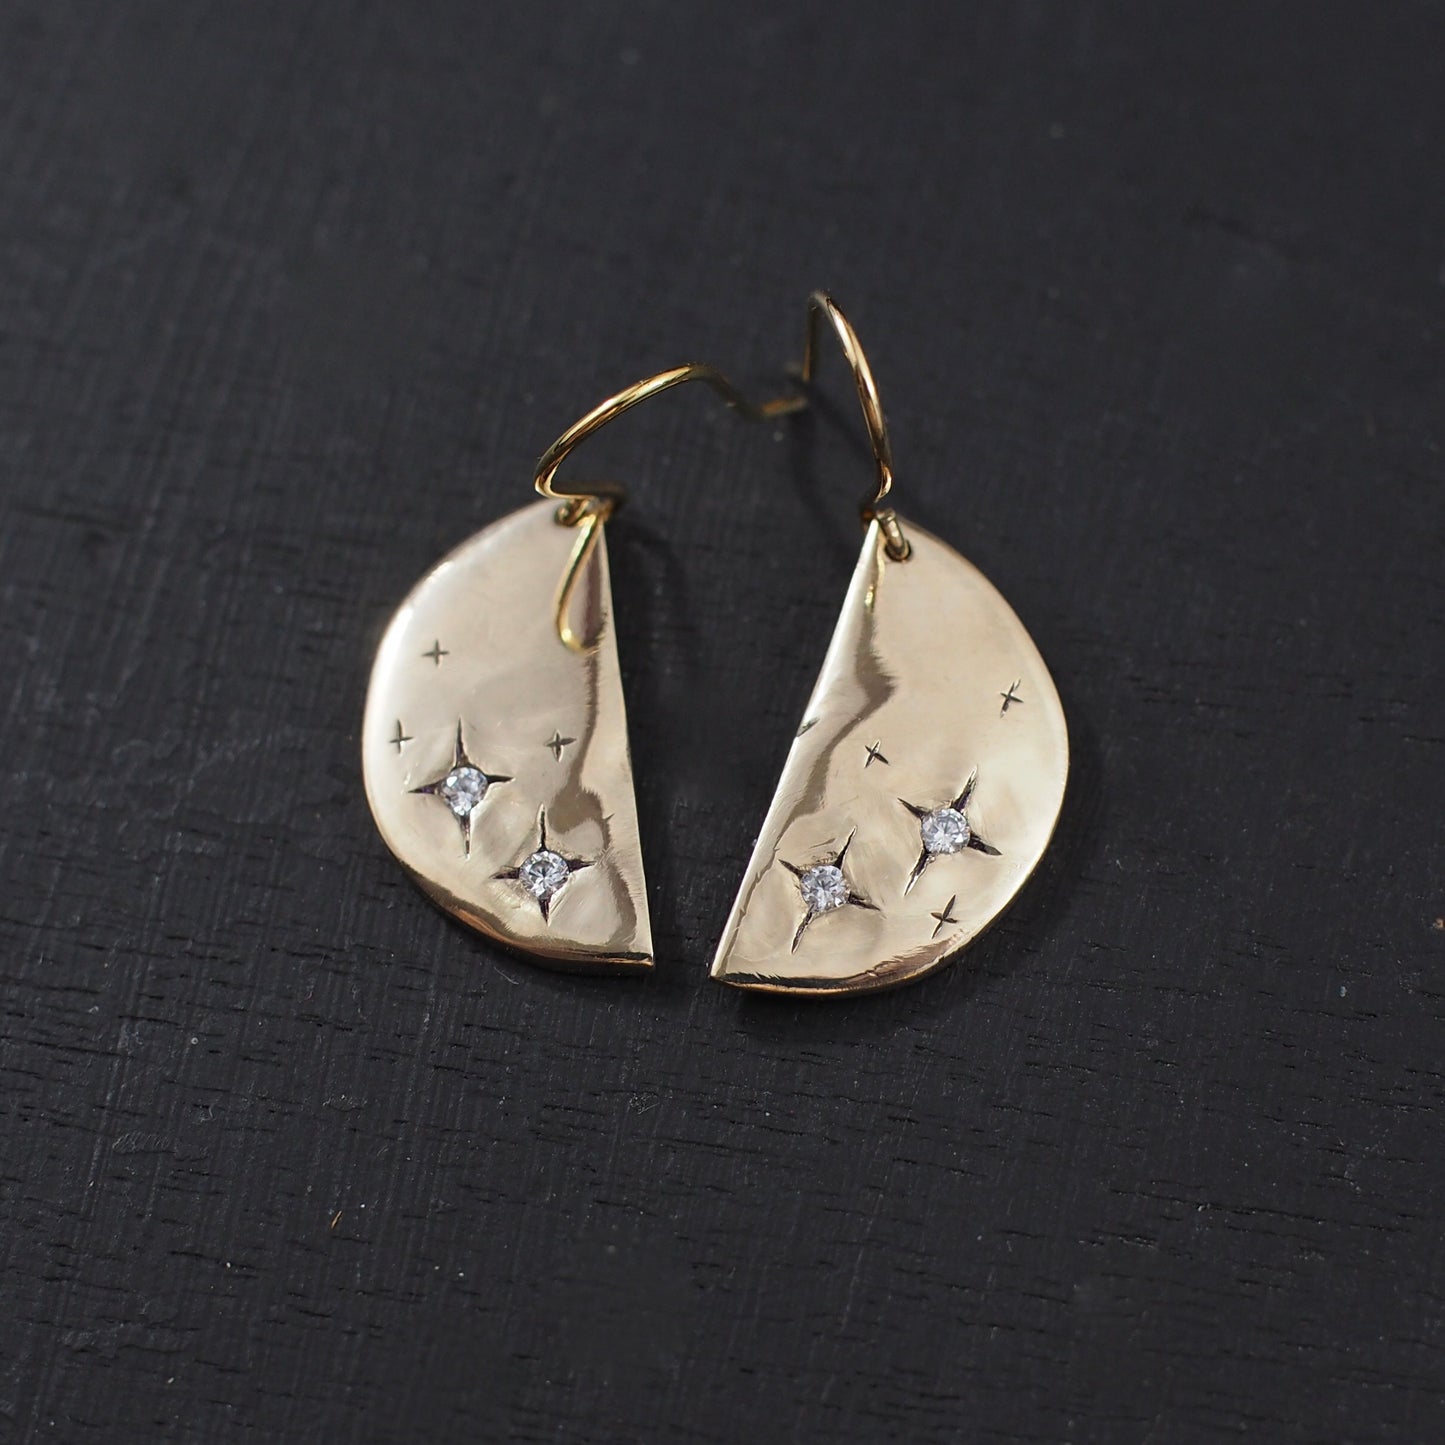 Stardust Half Moon Earrings - One of a Kind